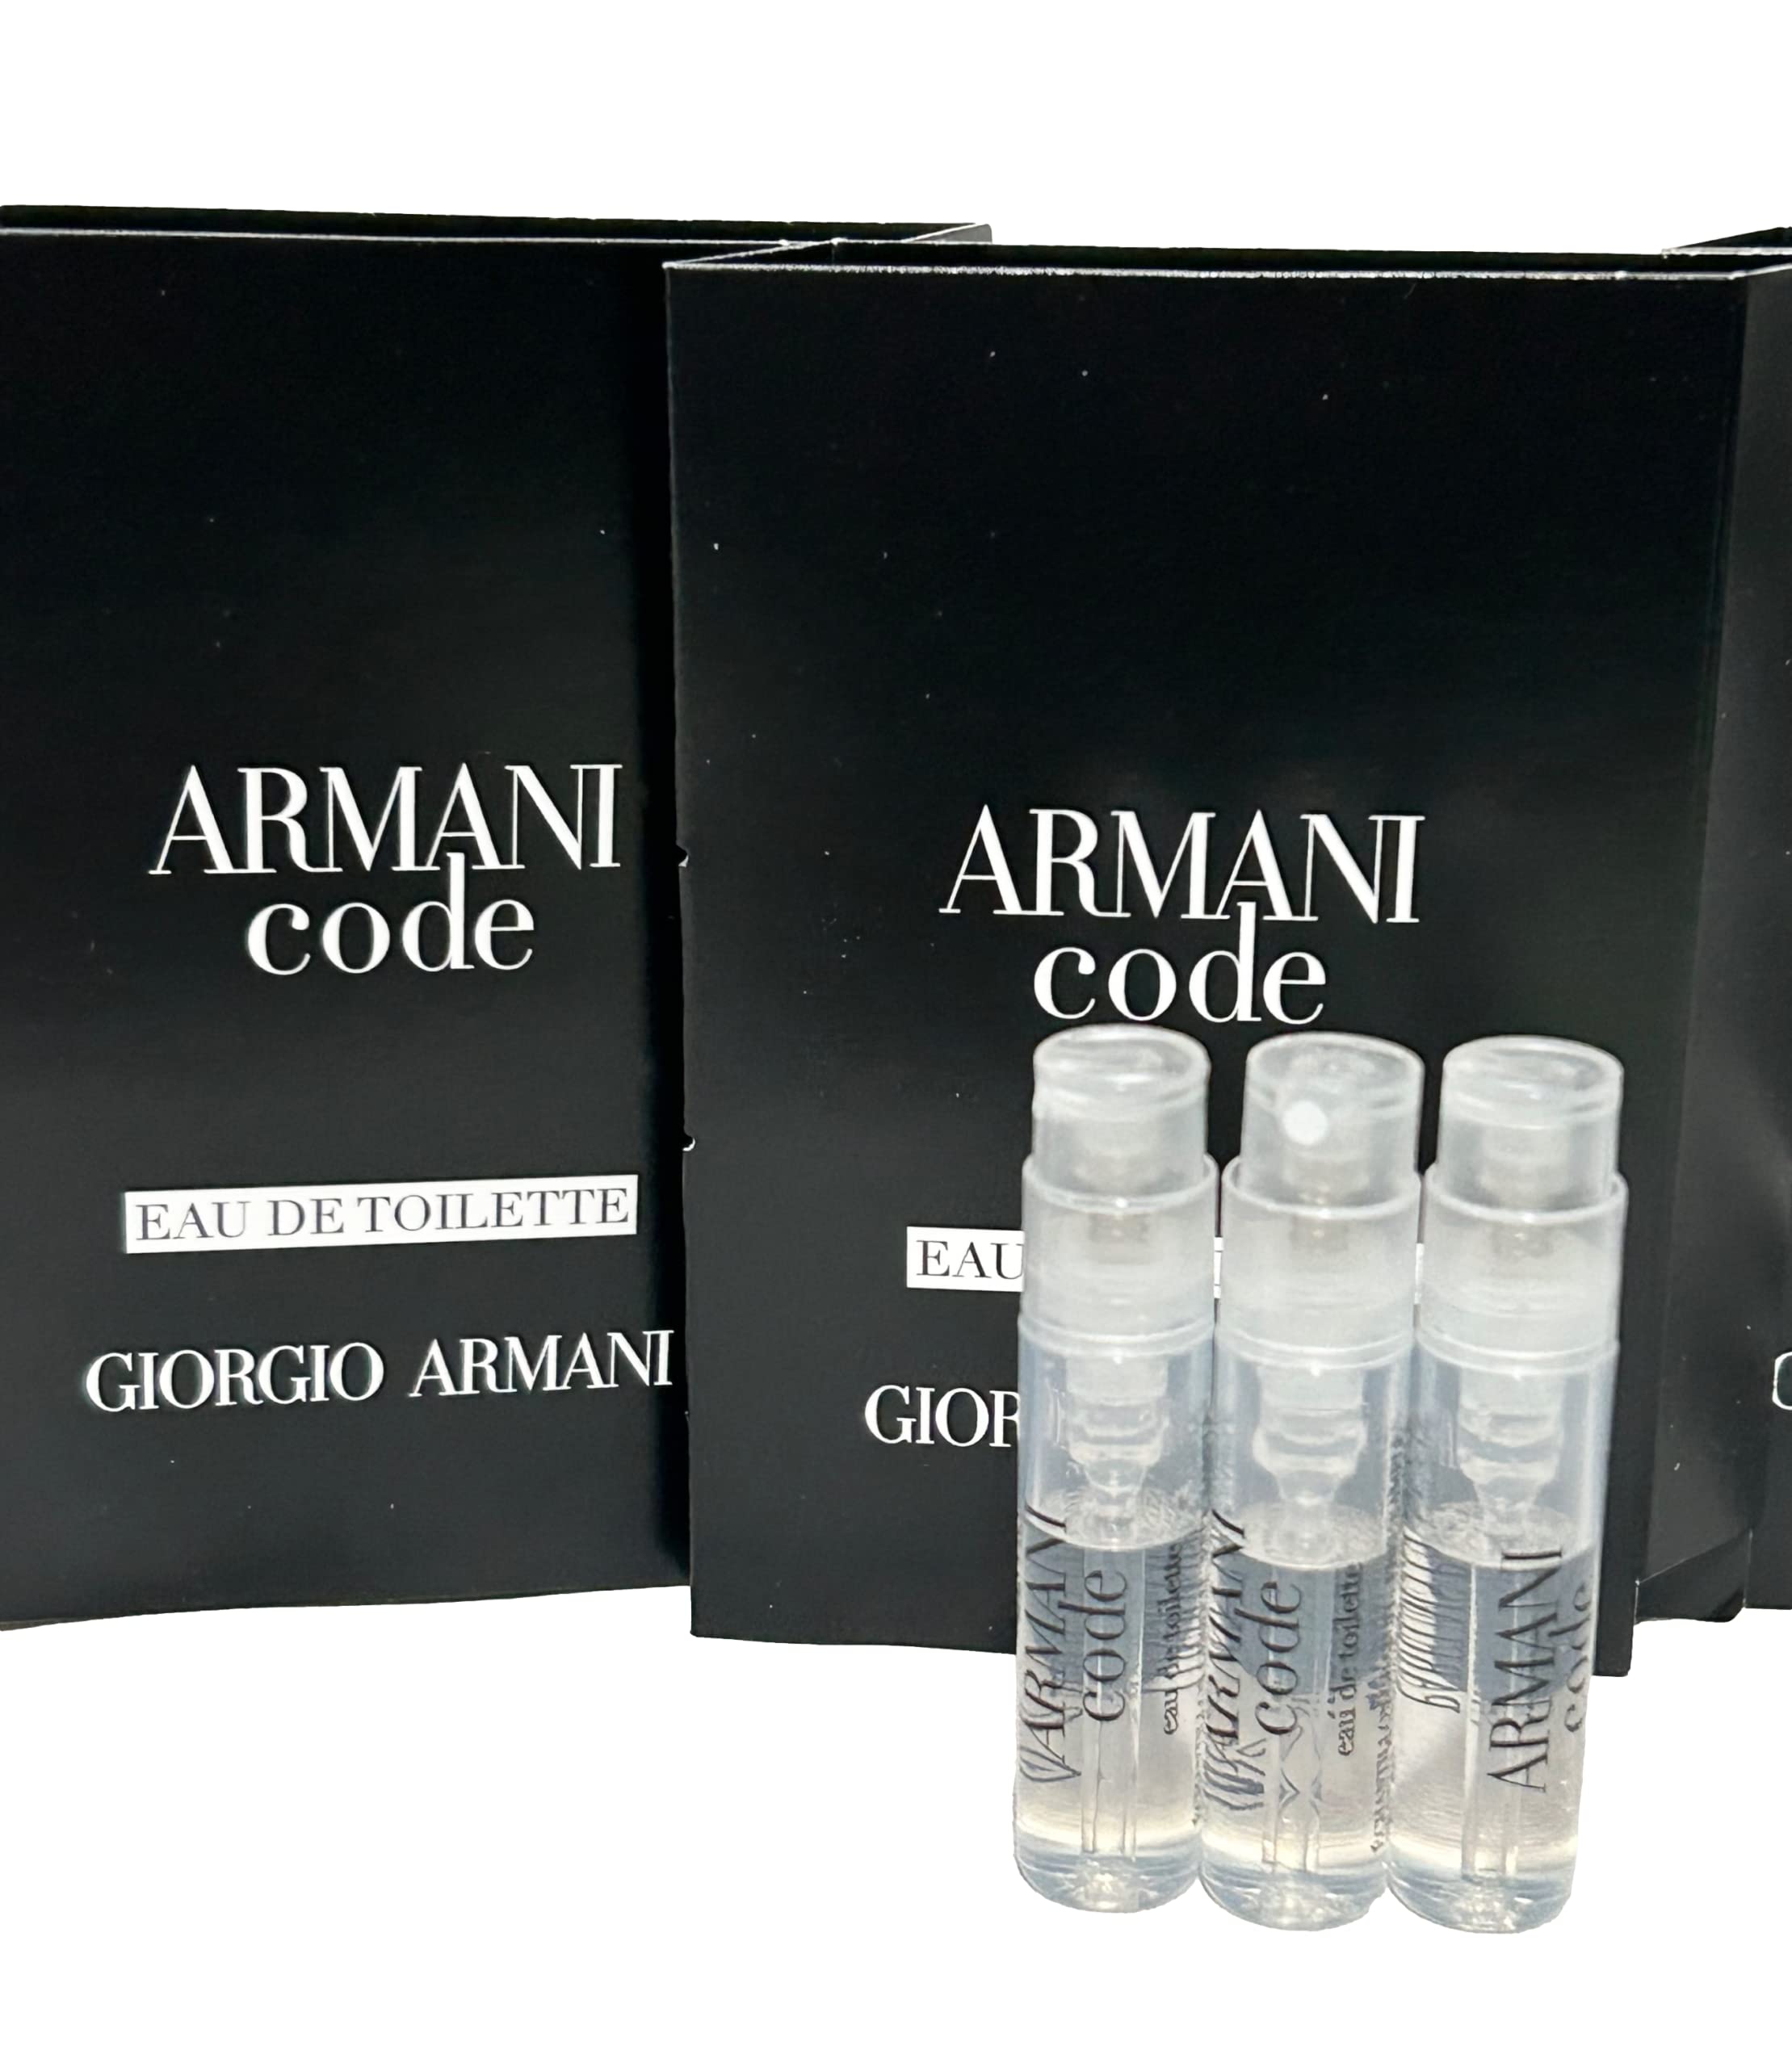 GIORGIO ARMANI Men ARMANI CODE EDT Sample Spray Perfume 1.2ml /.04 oz - 3 PCS set